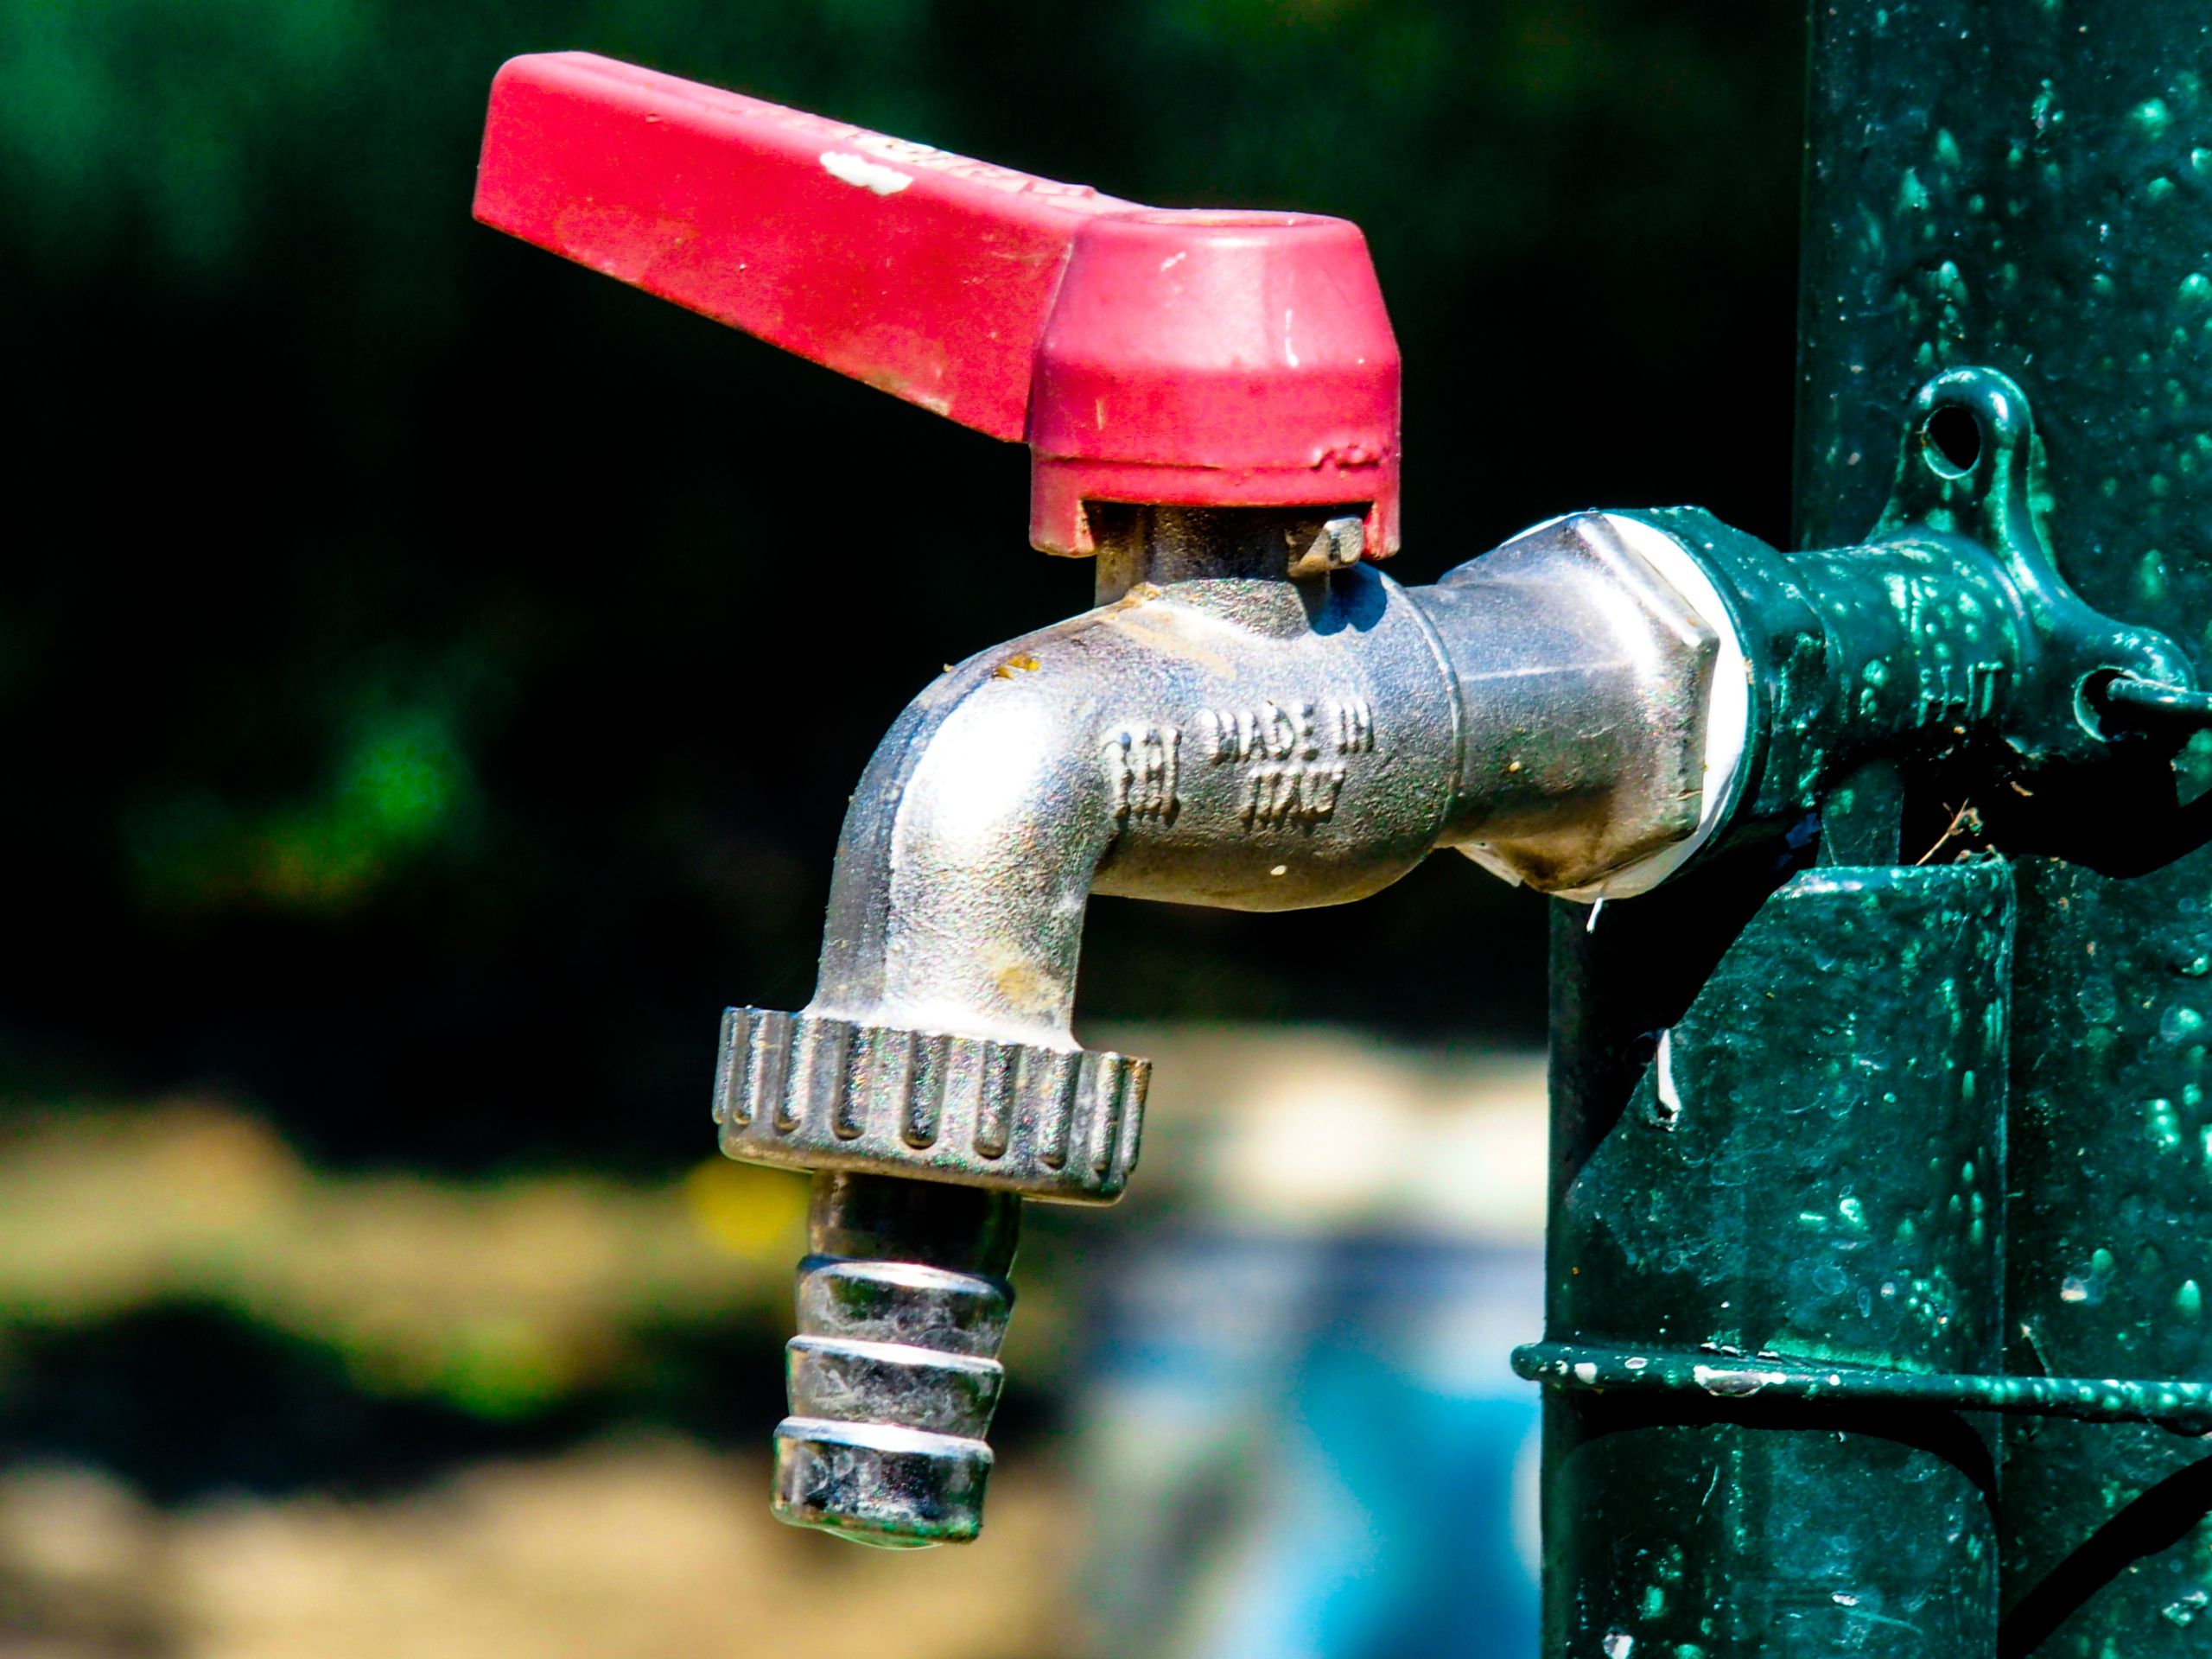 Με στόχο τα 6 εκατ. κυβικά μέτρα πόσιμου και δωρεάν νερού κινείται ο Δήμος Φυλής